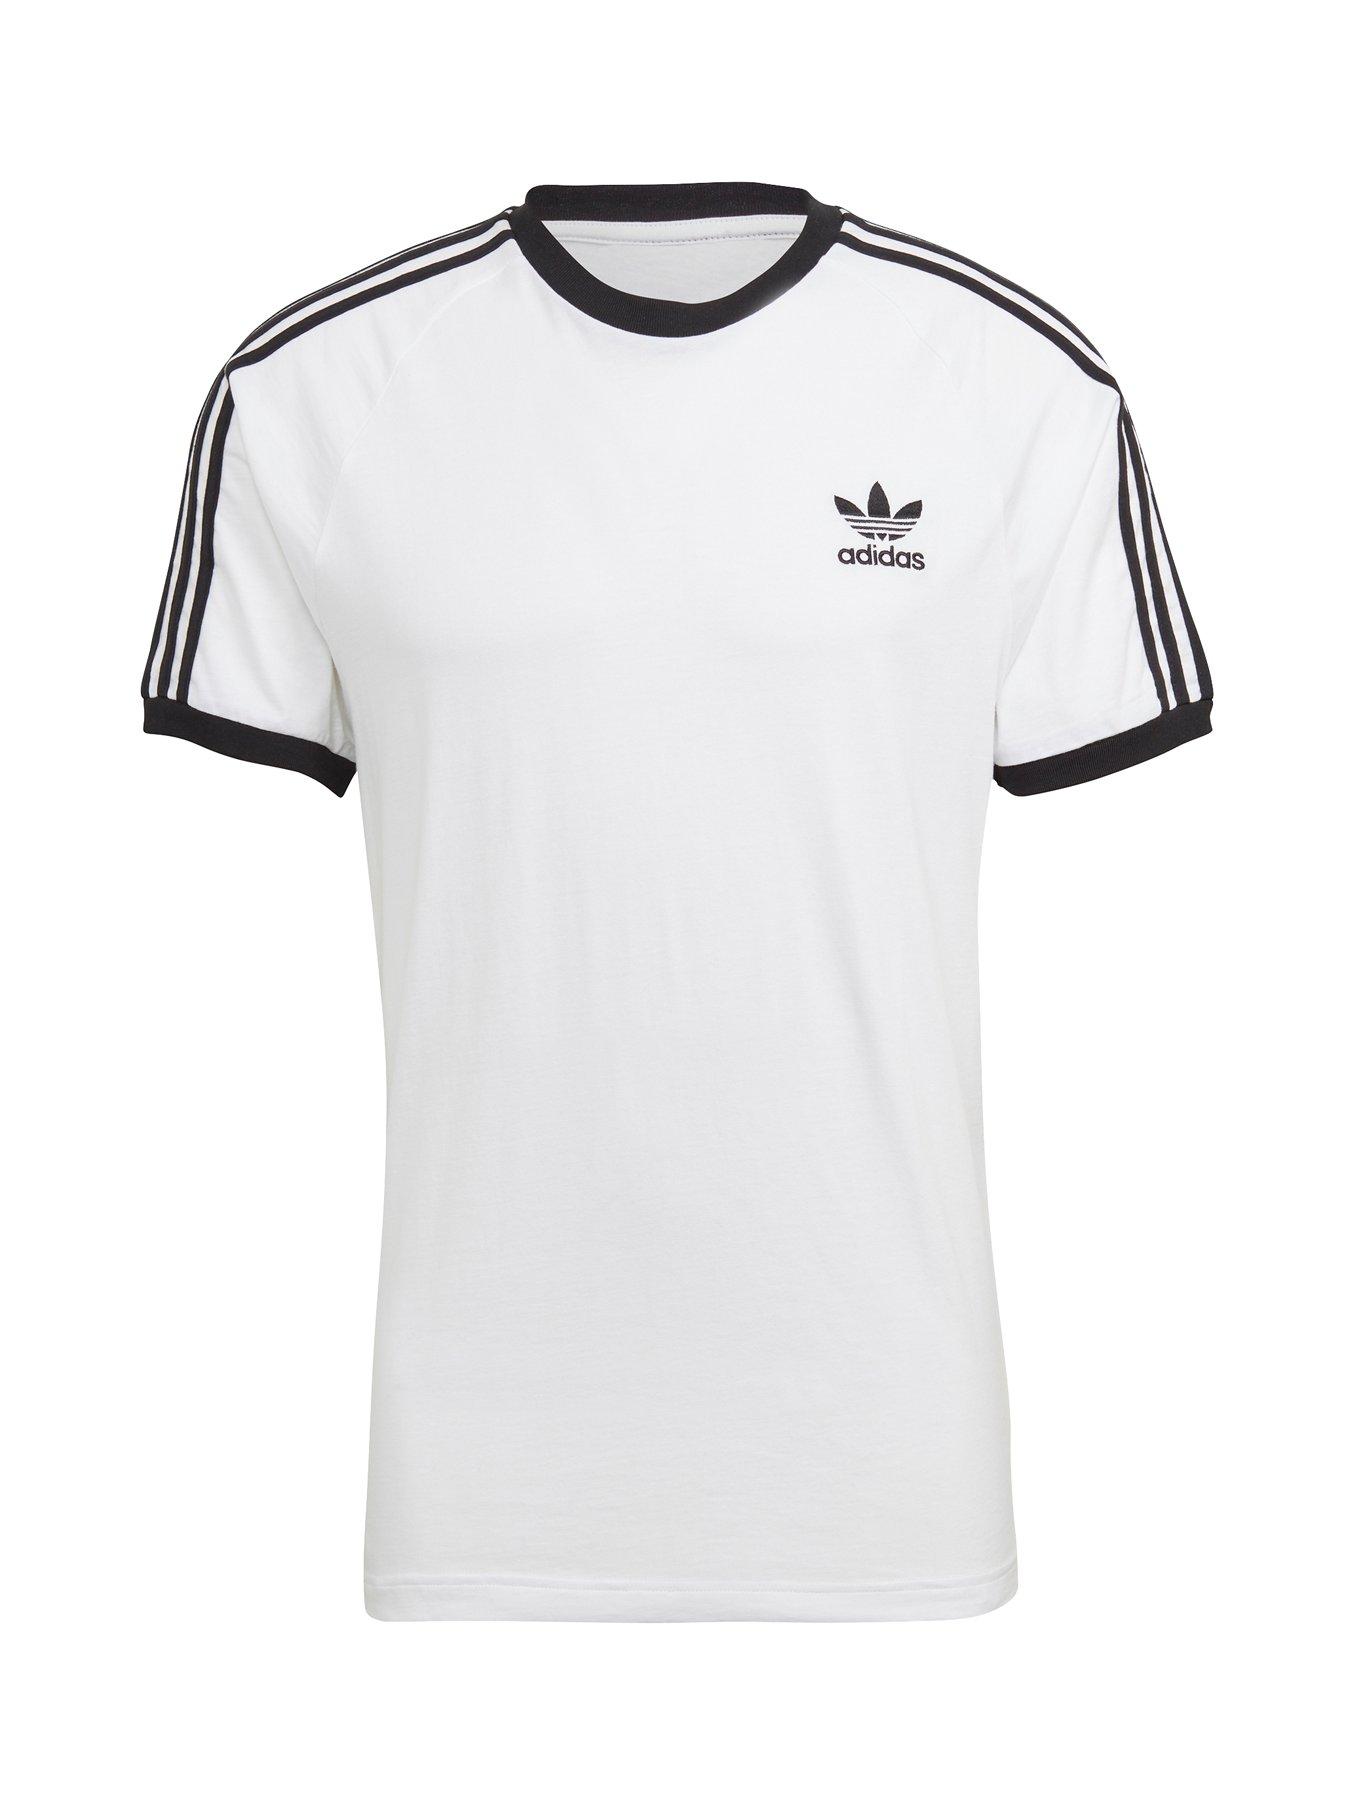 4XL | Adidas | T-shirts & polos | Mens sports clothing | Sports & leisure |